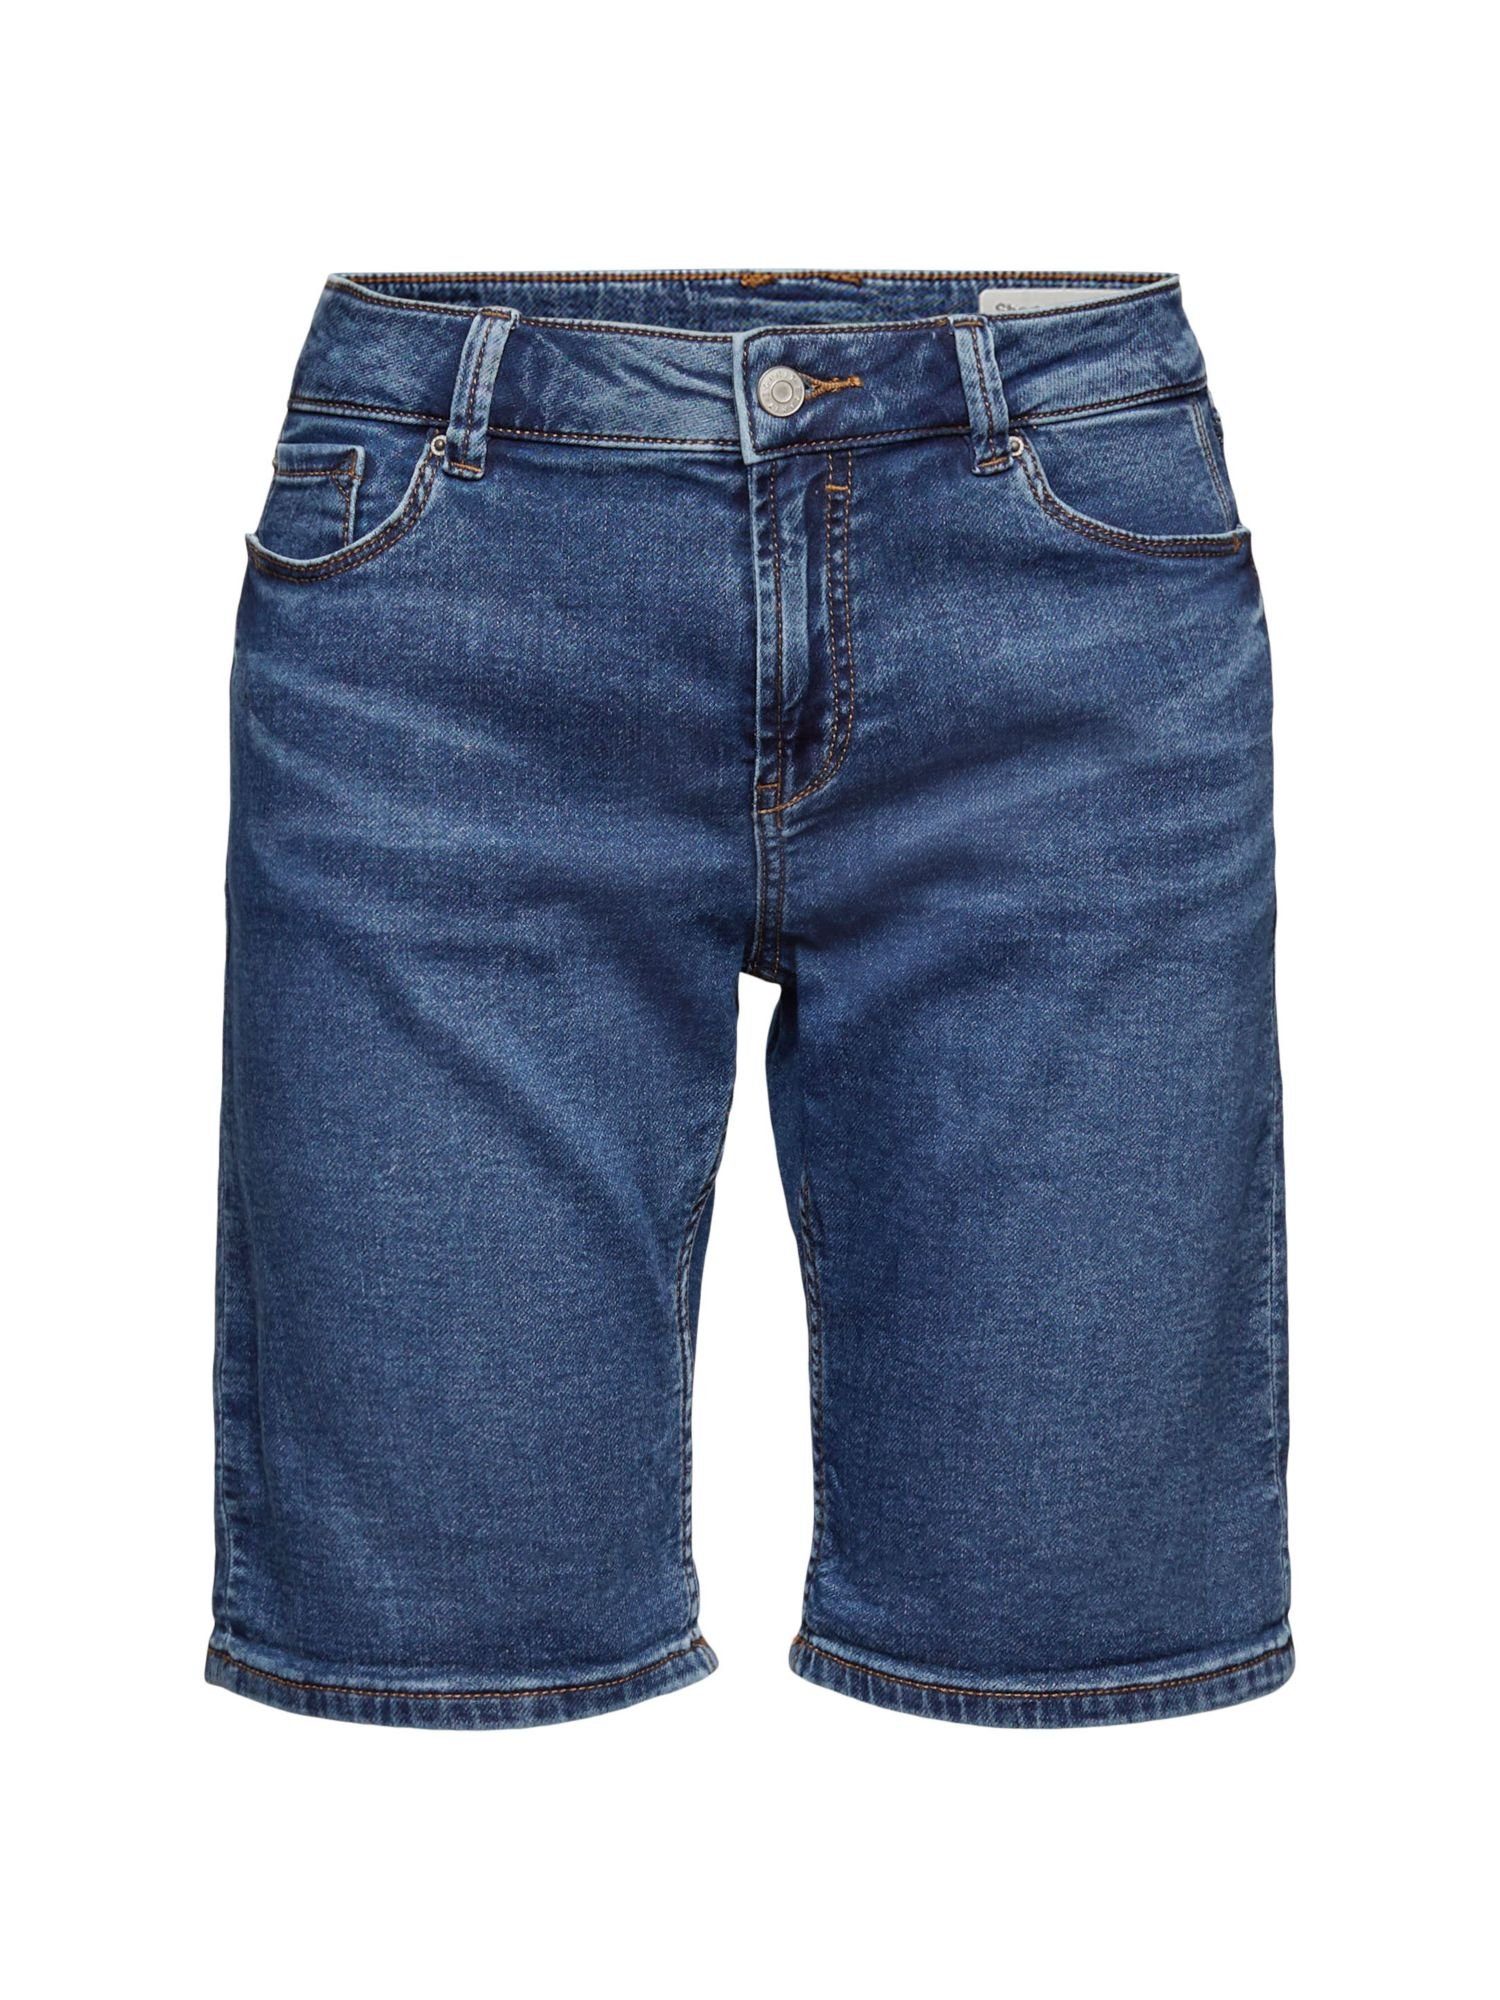 Esprit Jeansshorts Jeans-Shorts aus Bio-Baumwoll-Mix BLUE MEDIUM WASHED